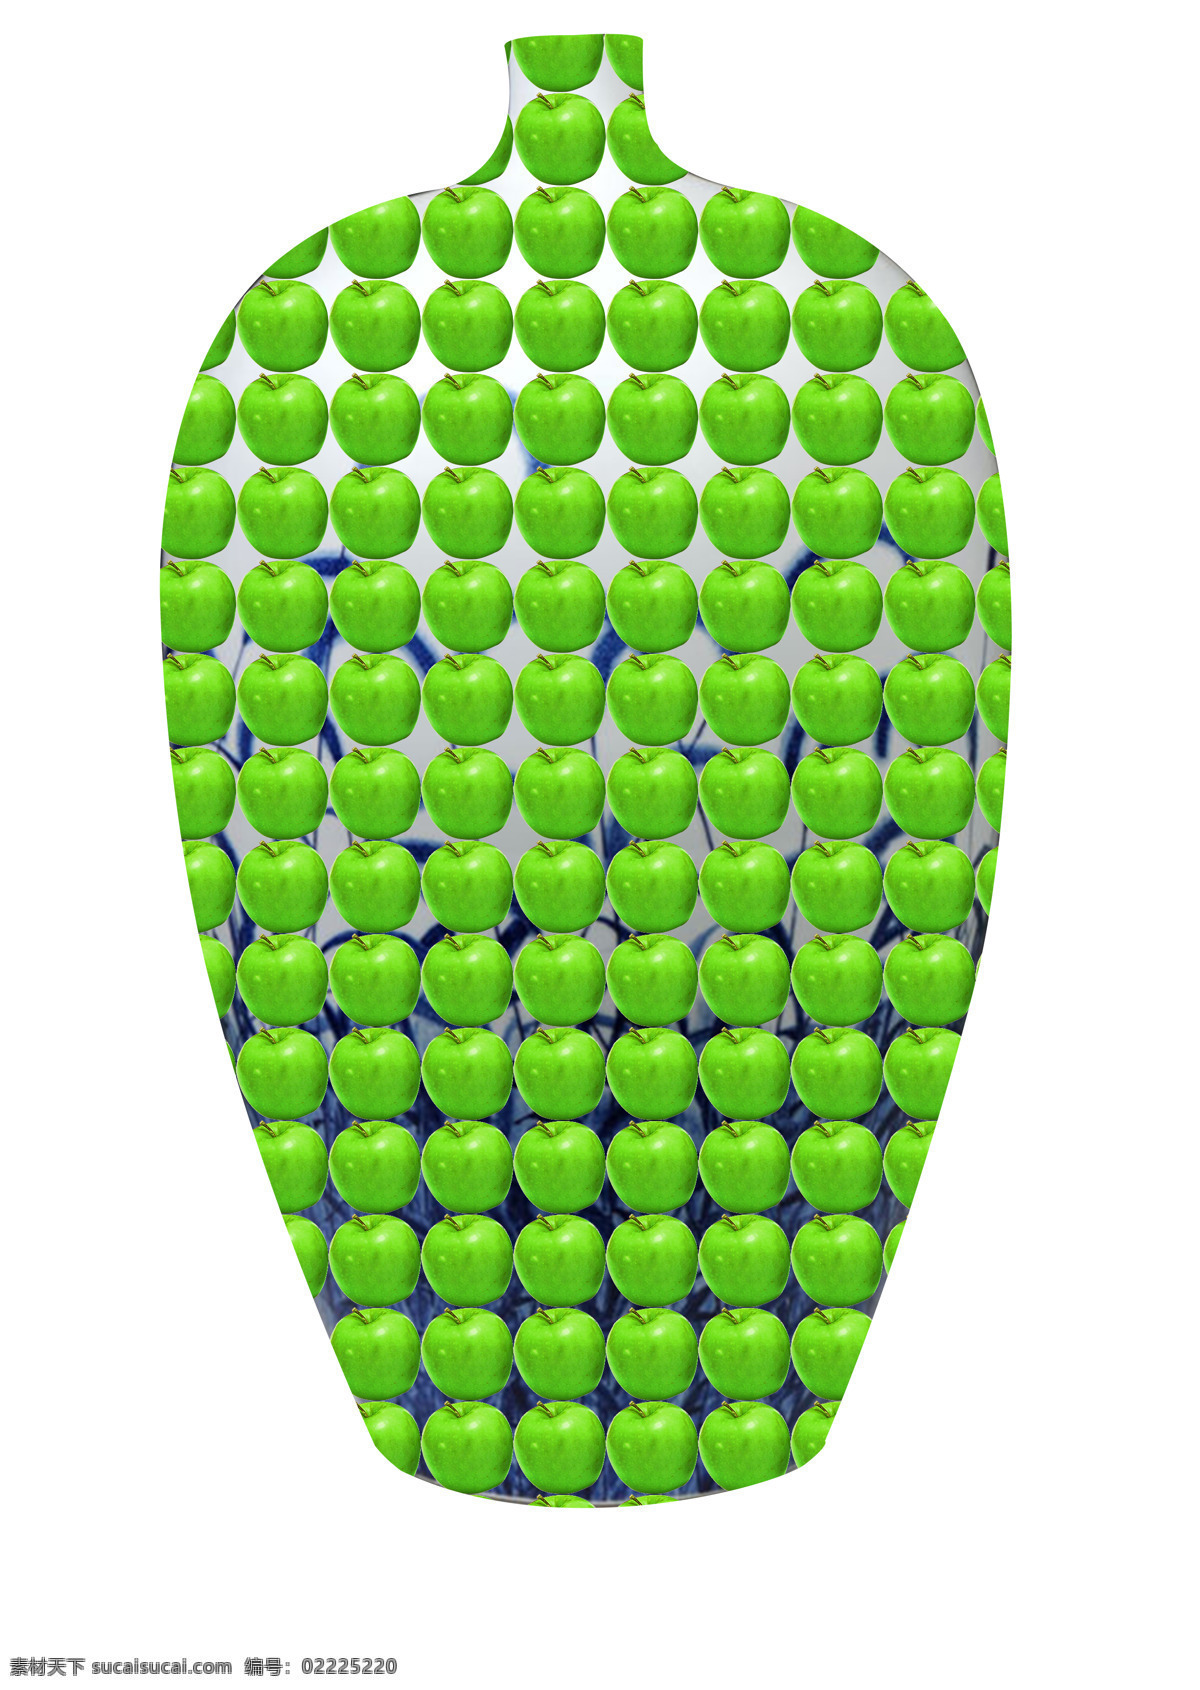 背景 花瓶 绿色 苹果 招贴 招贴设计 创意设计 创意 模板下载 苹果创意 psd源文件